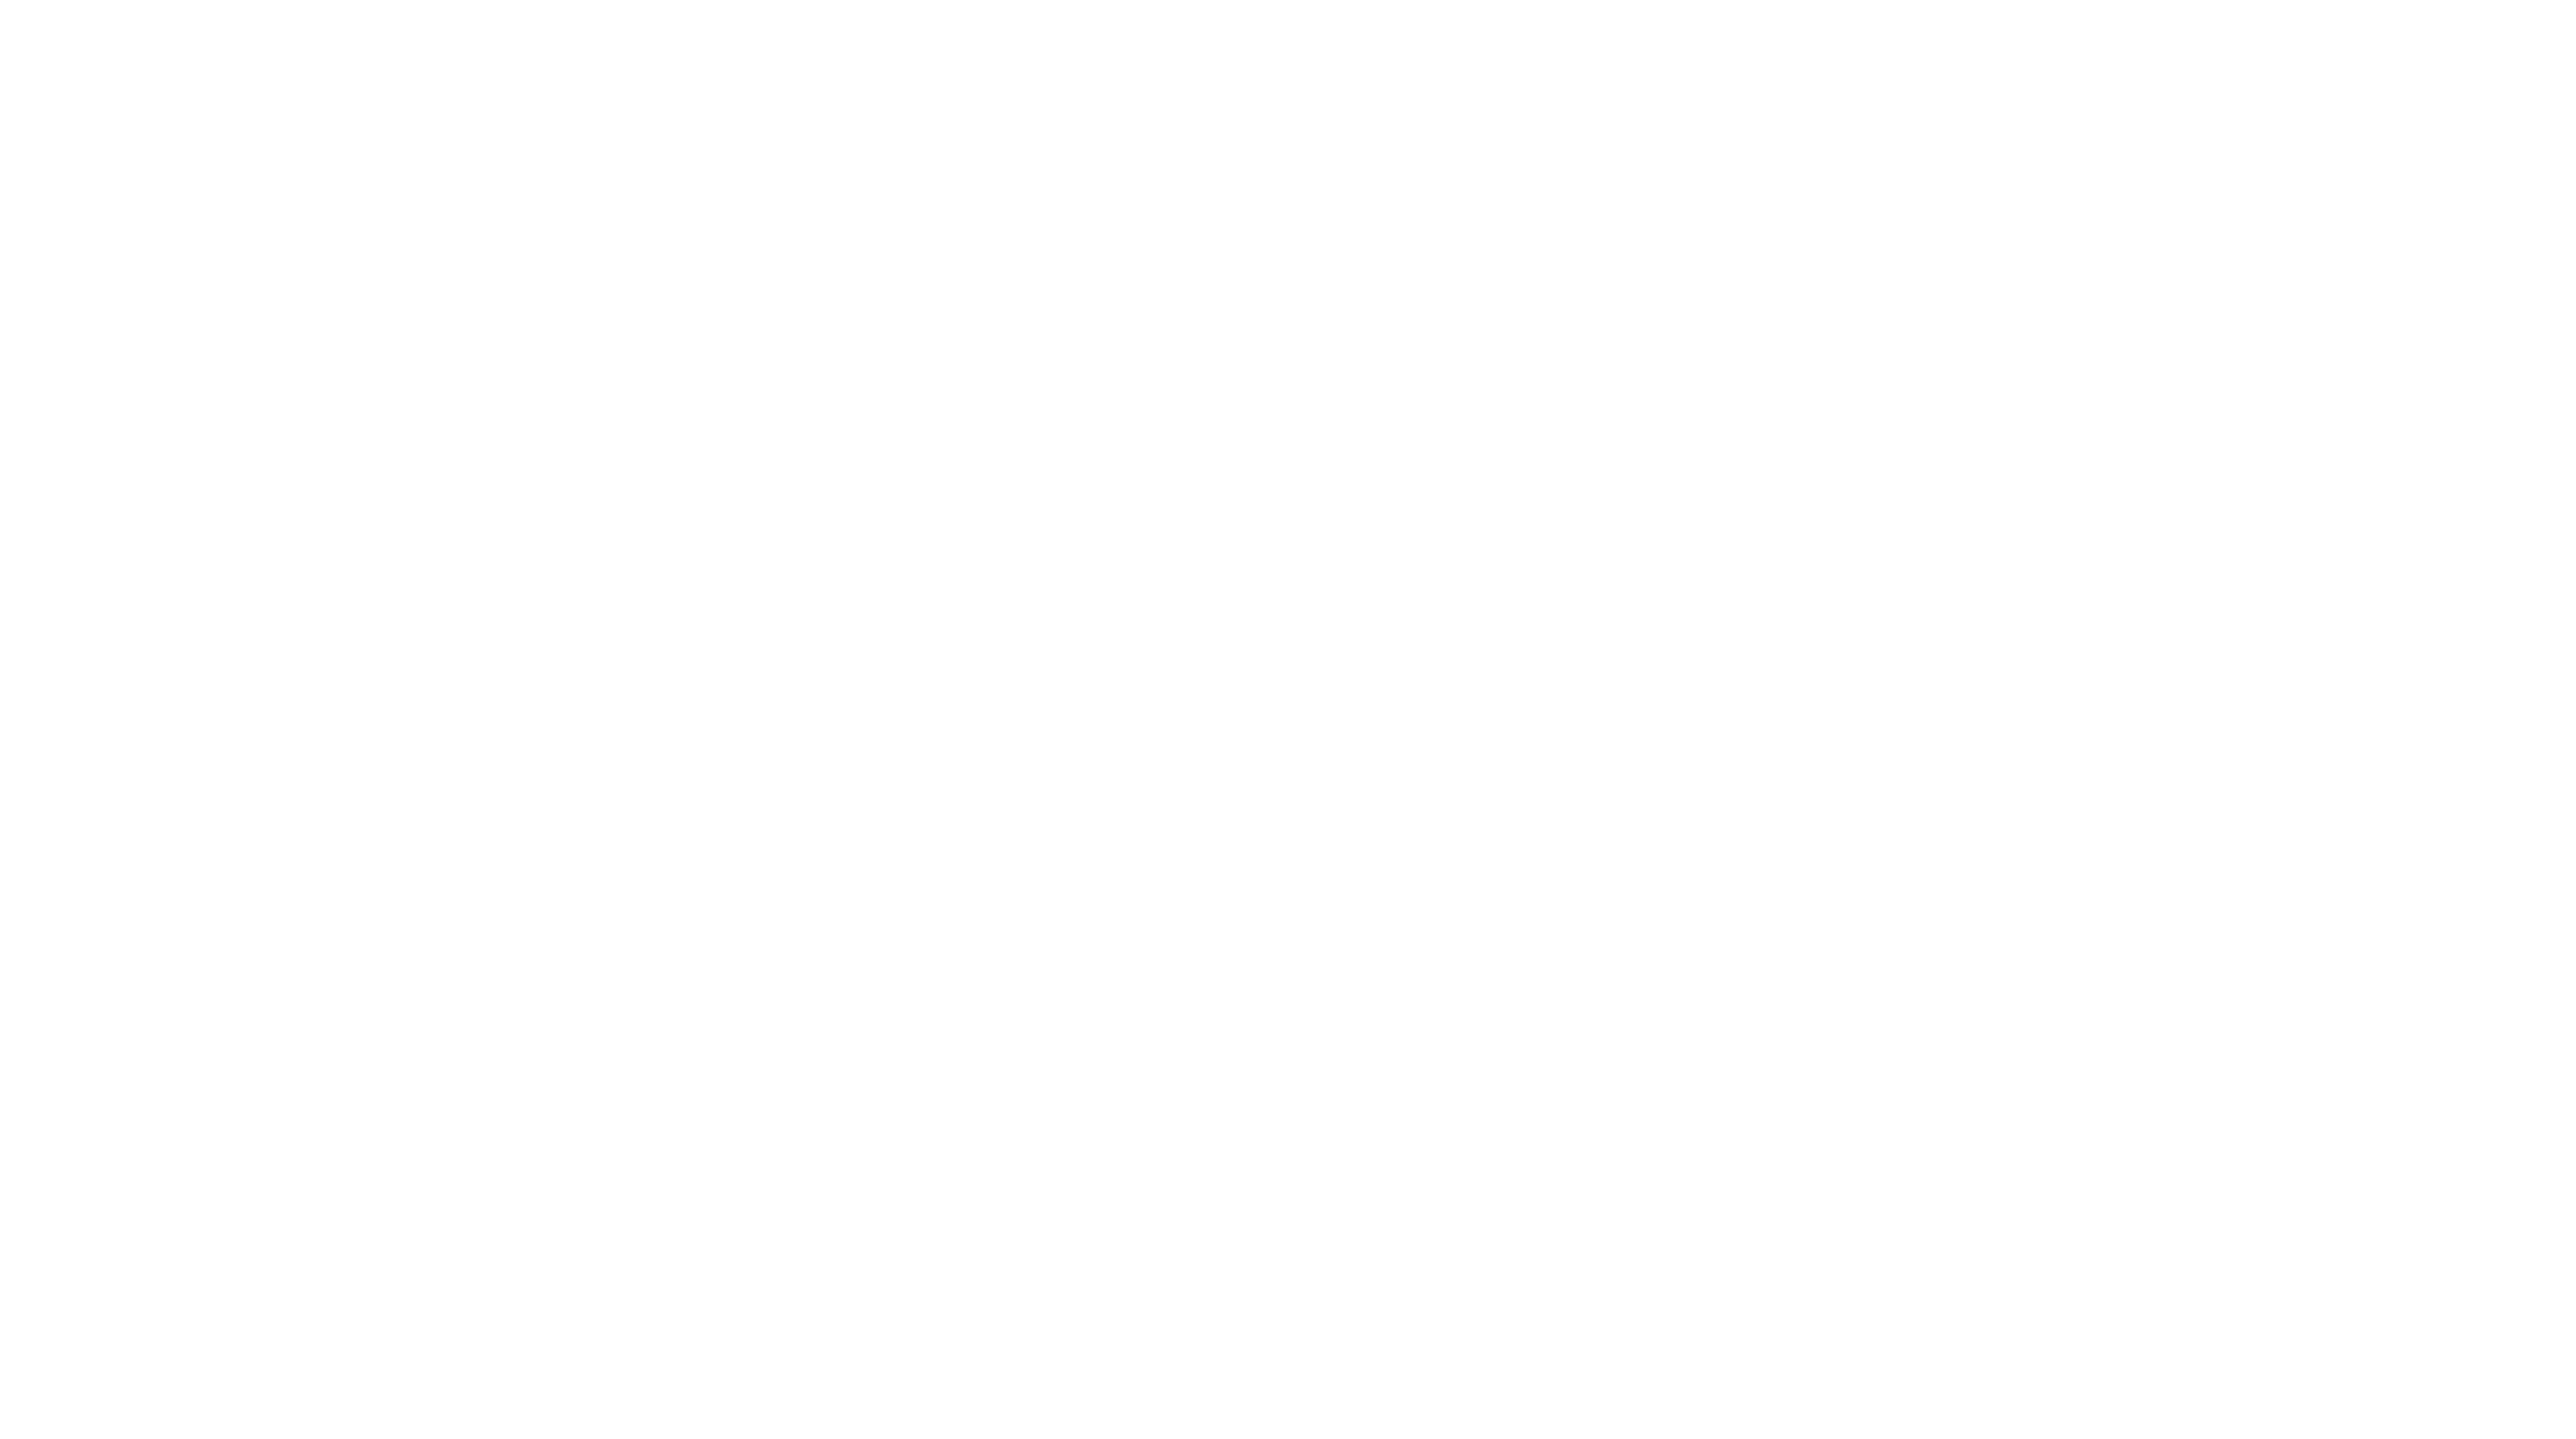 Strados white logo with a transparent background.